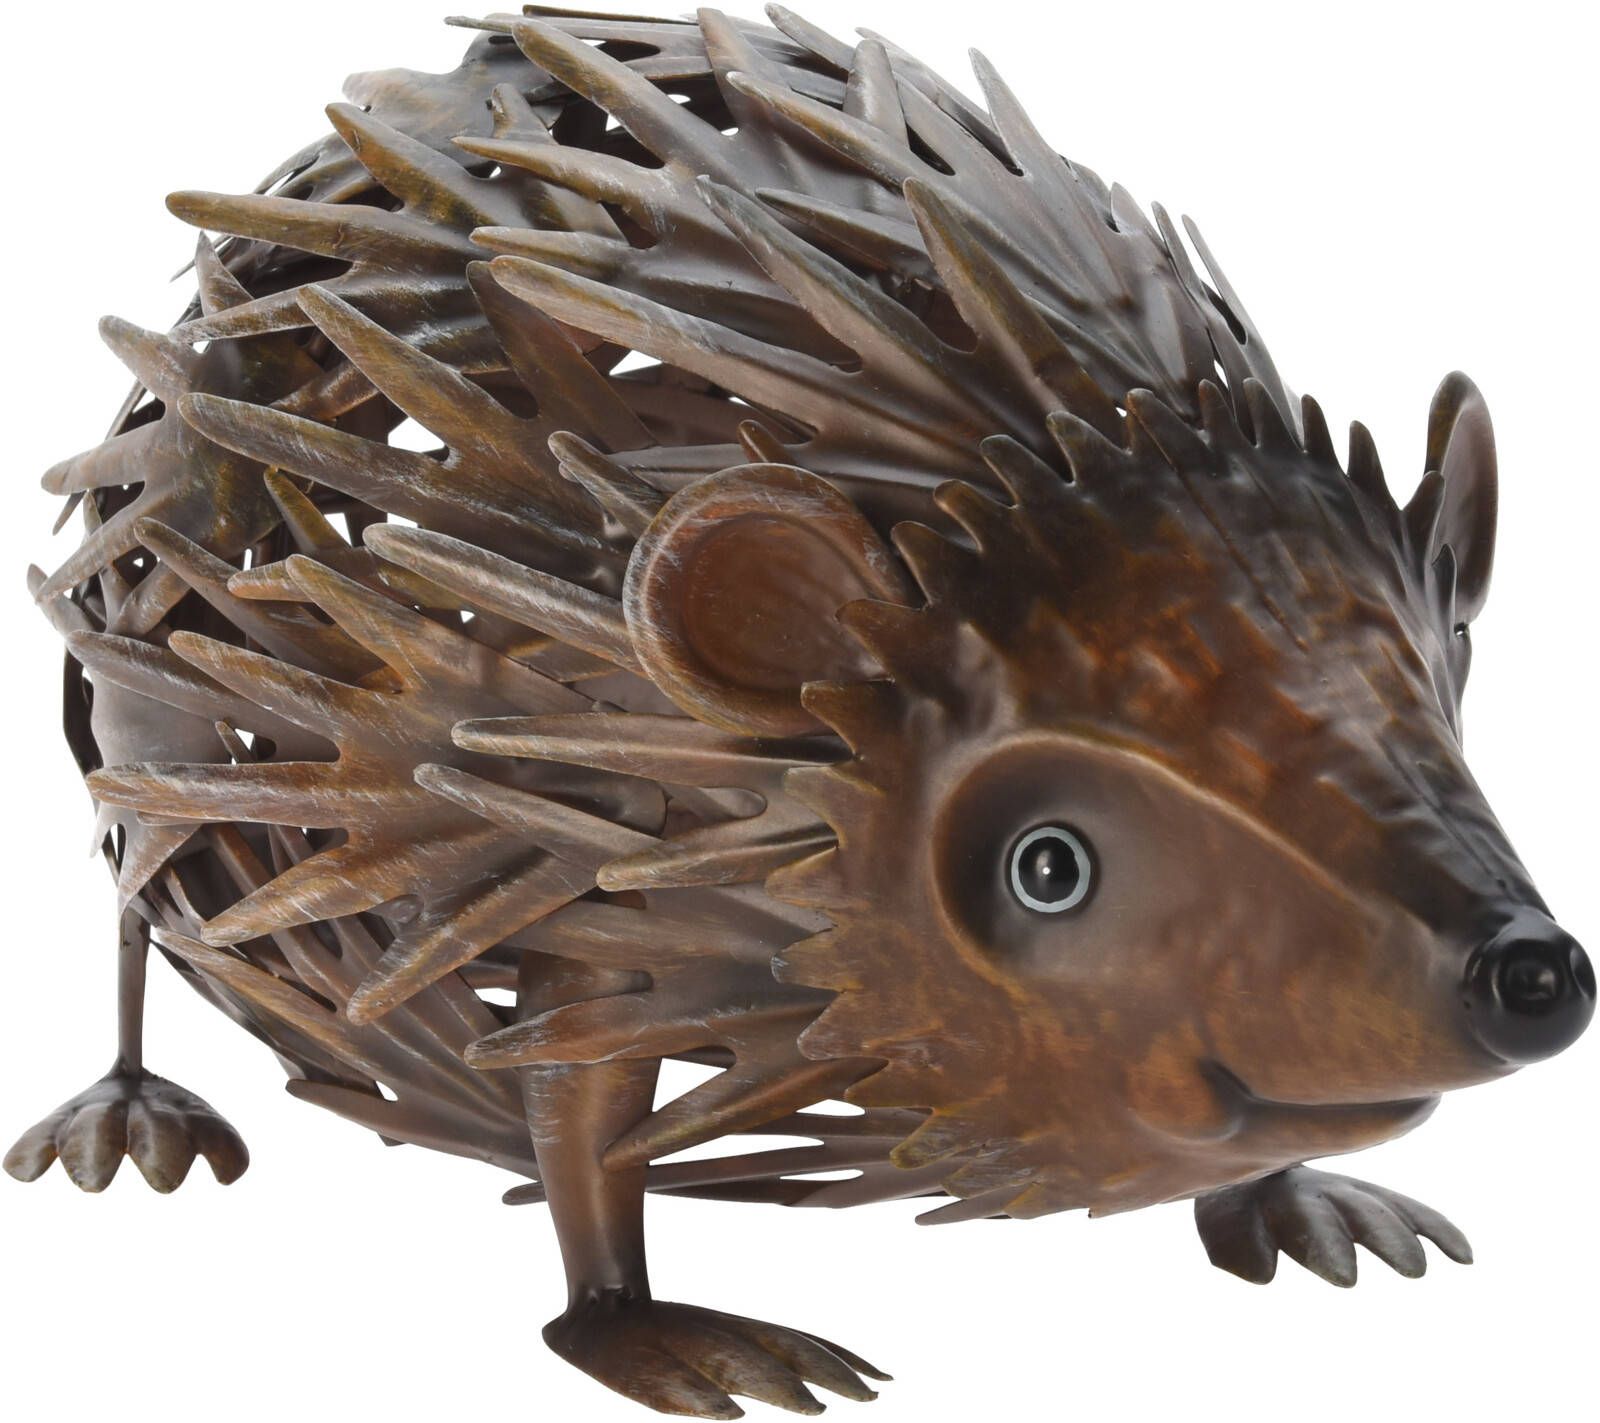 ProGarden Zahradní figurka ježek, 25 x 11 x 12,5 cm, kov - EMAKO.CZ s.r.o.